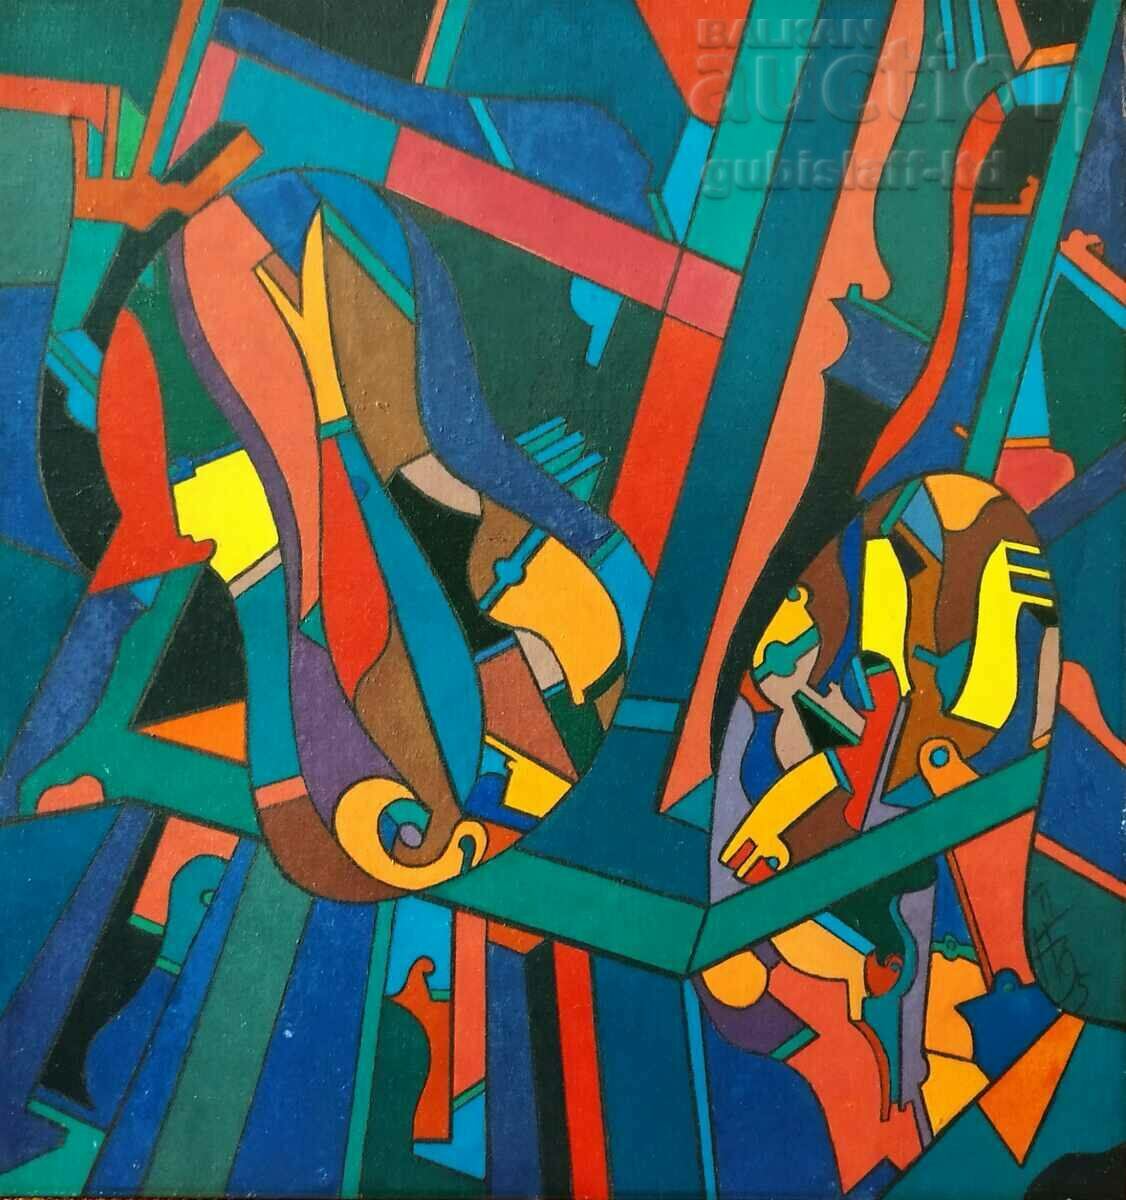 Ζωγραφική, αφαίρεση, κυβισμός, τέχνη. Bogdan Benev, 1995